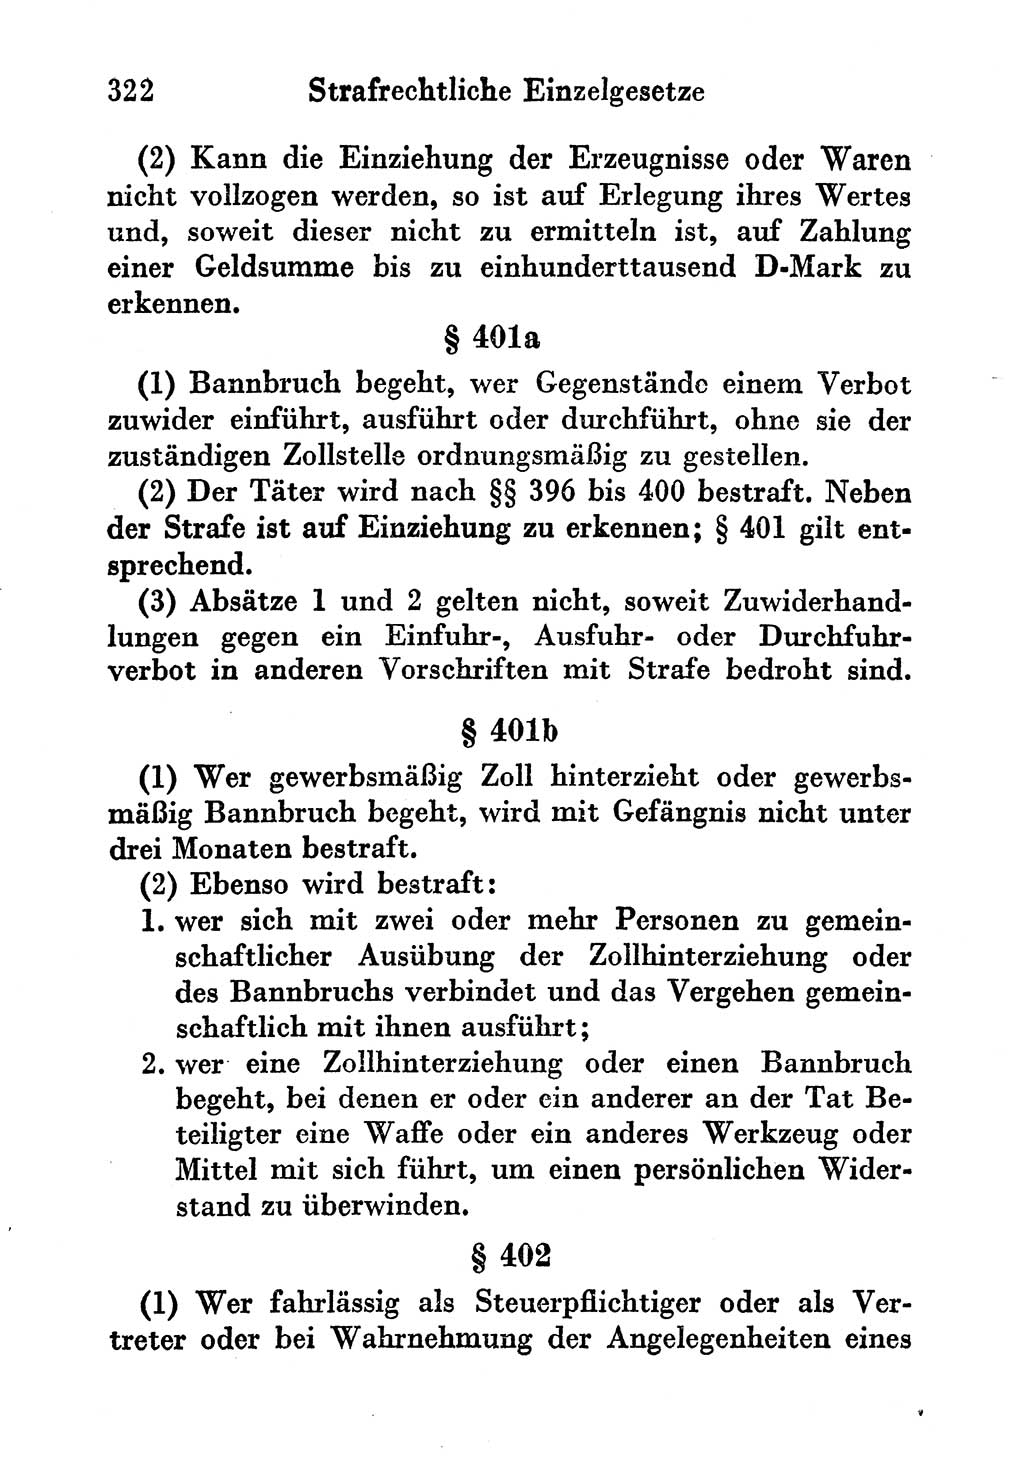 Strafgesetzbuch (StGB) und andere Strafgesetze [Deutsche Demokratische Republik (DDR)] 1956, Seite 322 (StGB Strafges. DDR 1956, S. 322)